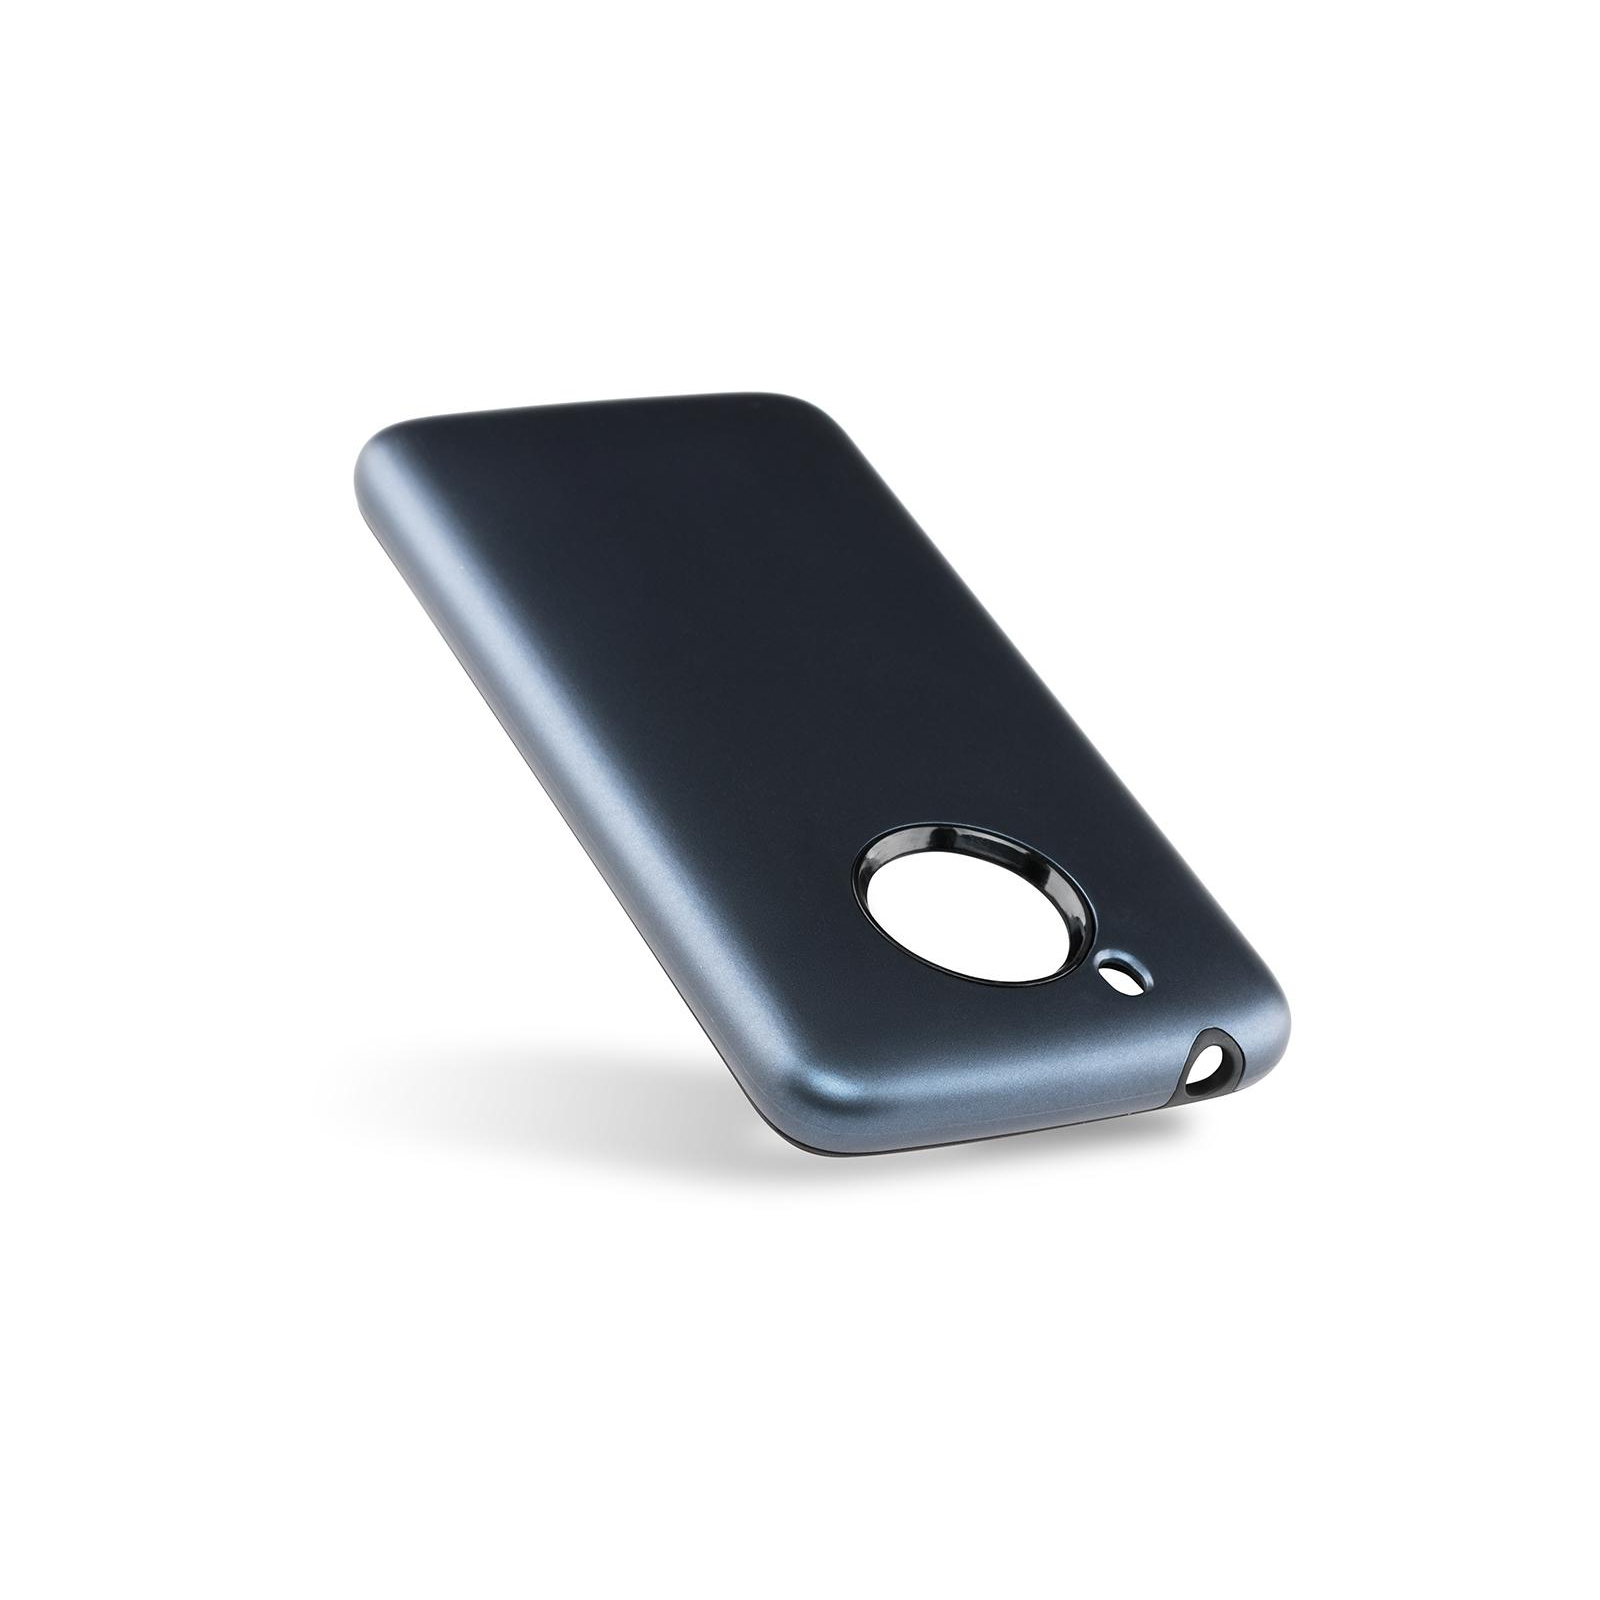 Чехол для мобильного телефона Laudtec для Motorola Moto G5 Ruber Painting (Blue) (LT-RMG5B) изображение 5